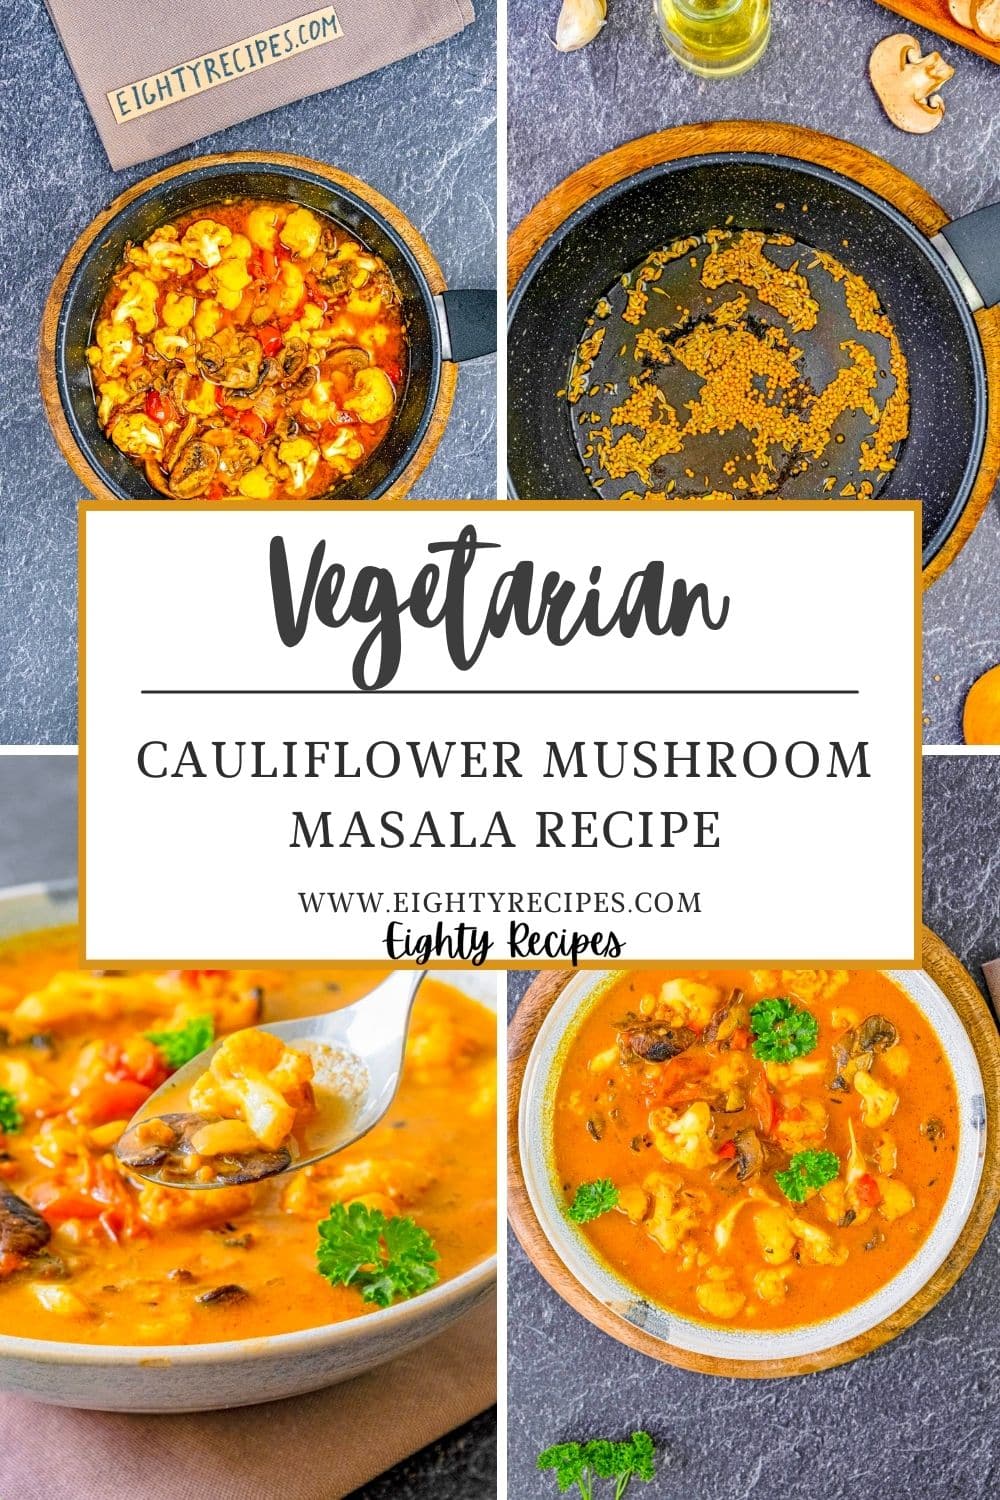 How To Make Cauliflower Mushroom Masala